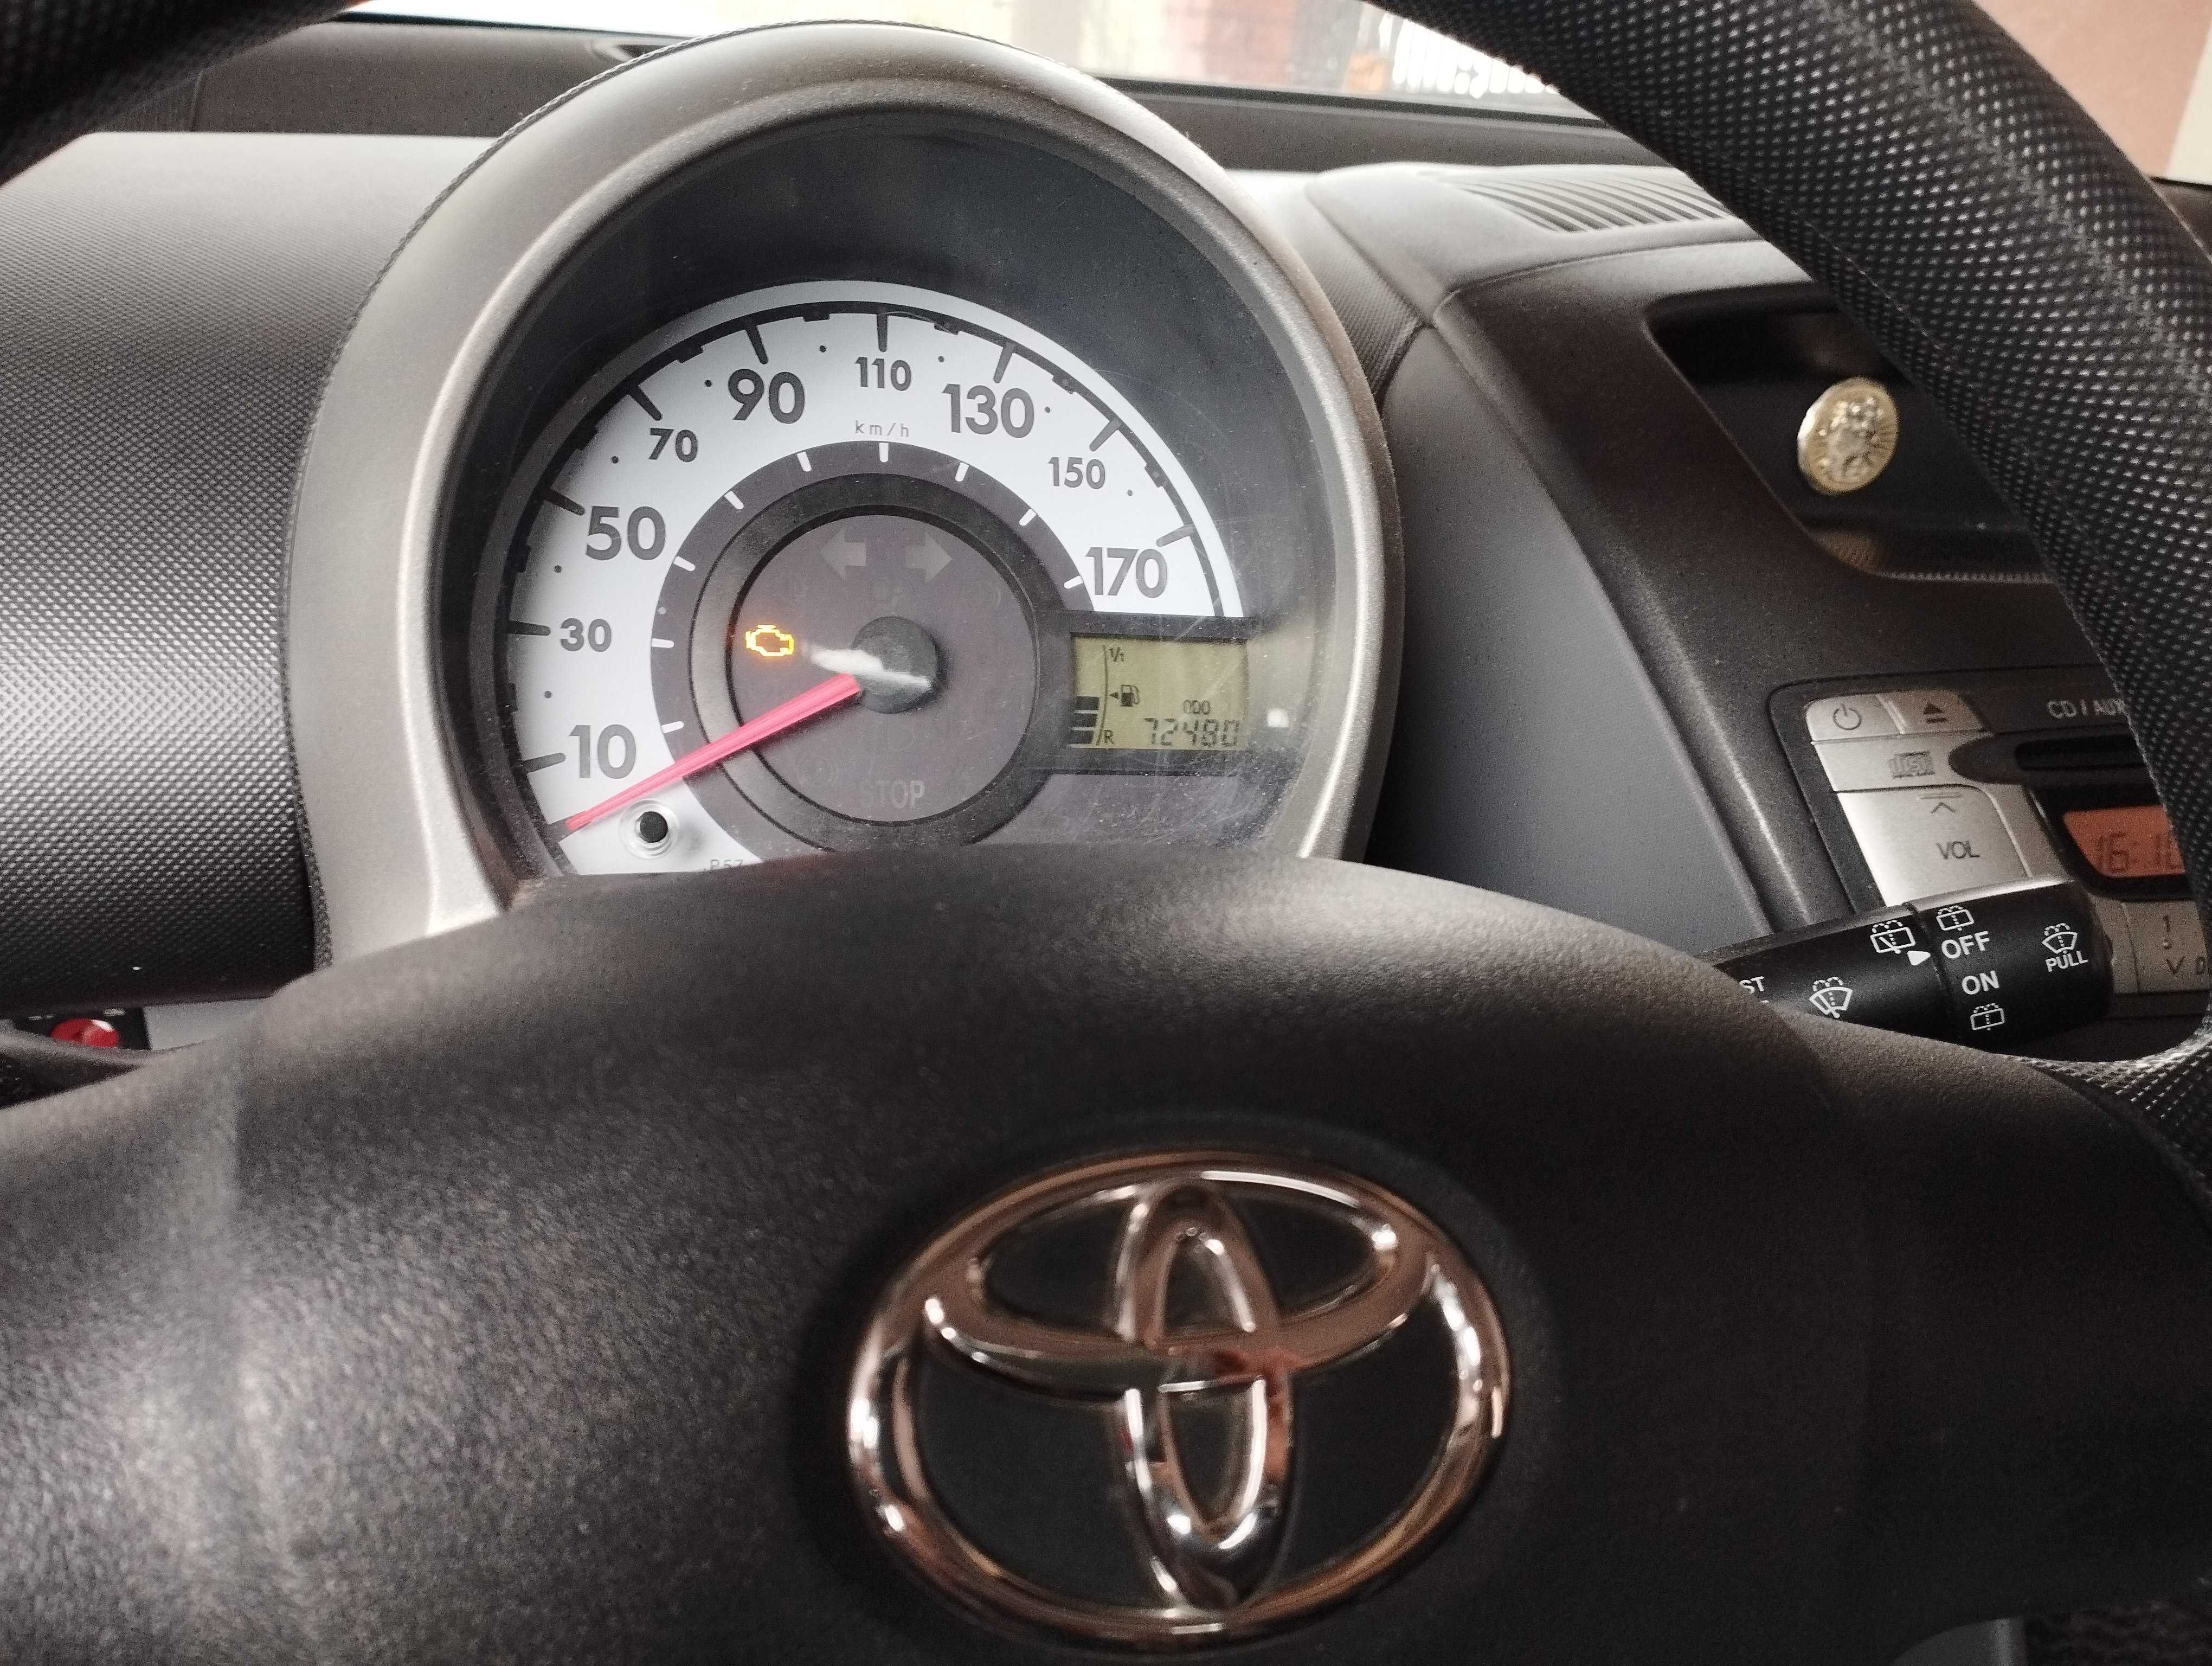 Toyota Aygo 1.0 benzyna 2008r.